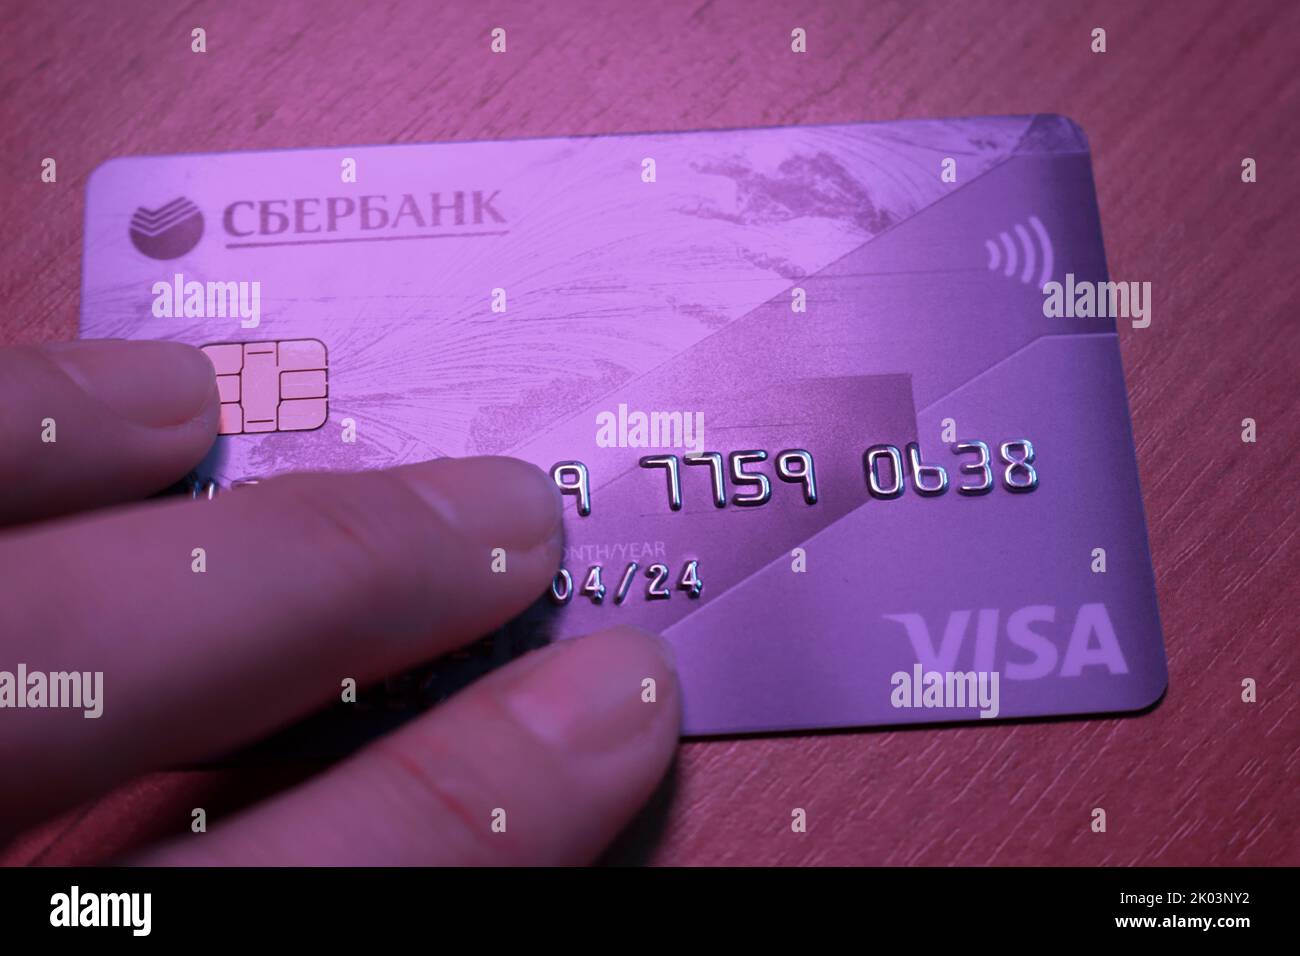 La carta di credito di Sberbank, che è caduta sotto le sanzioni, è in mano. Logos Visa, primo piano Sberbank. Crisi economica, collasso bancario in Russia. M Foto Stock